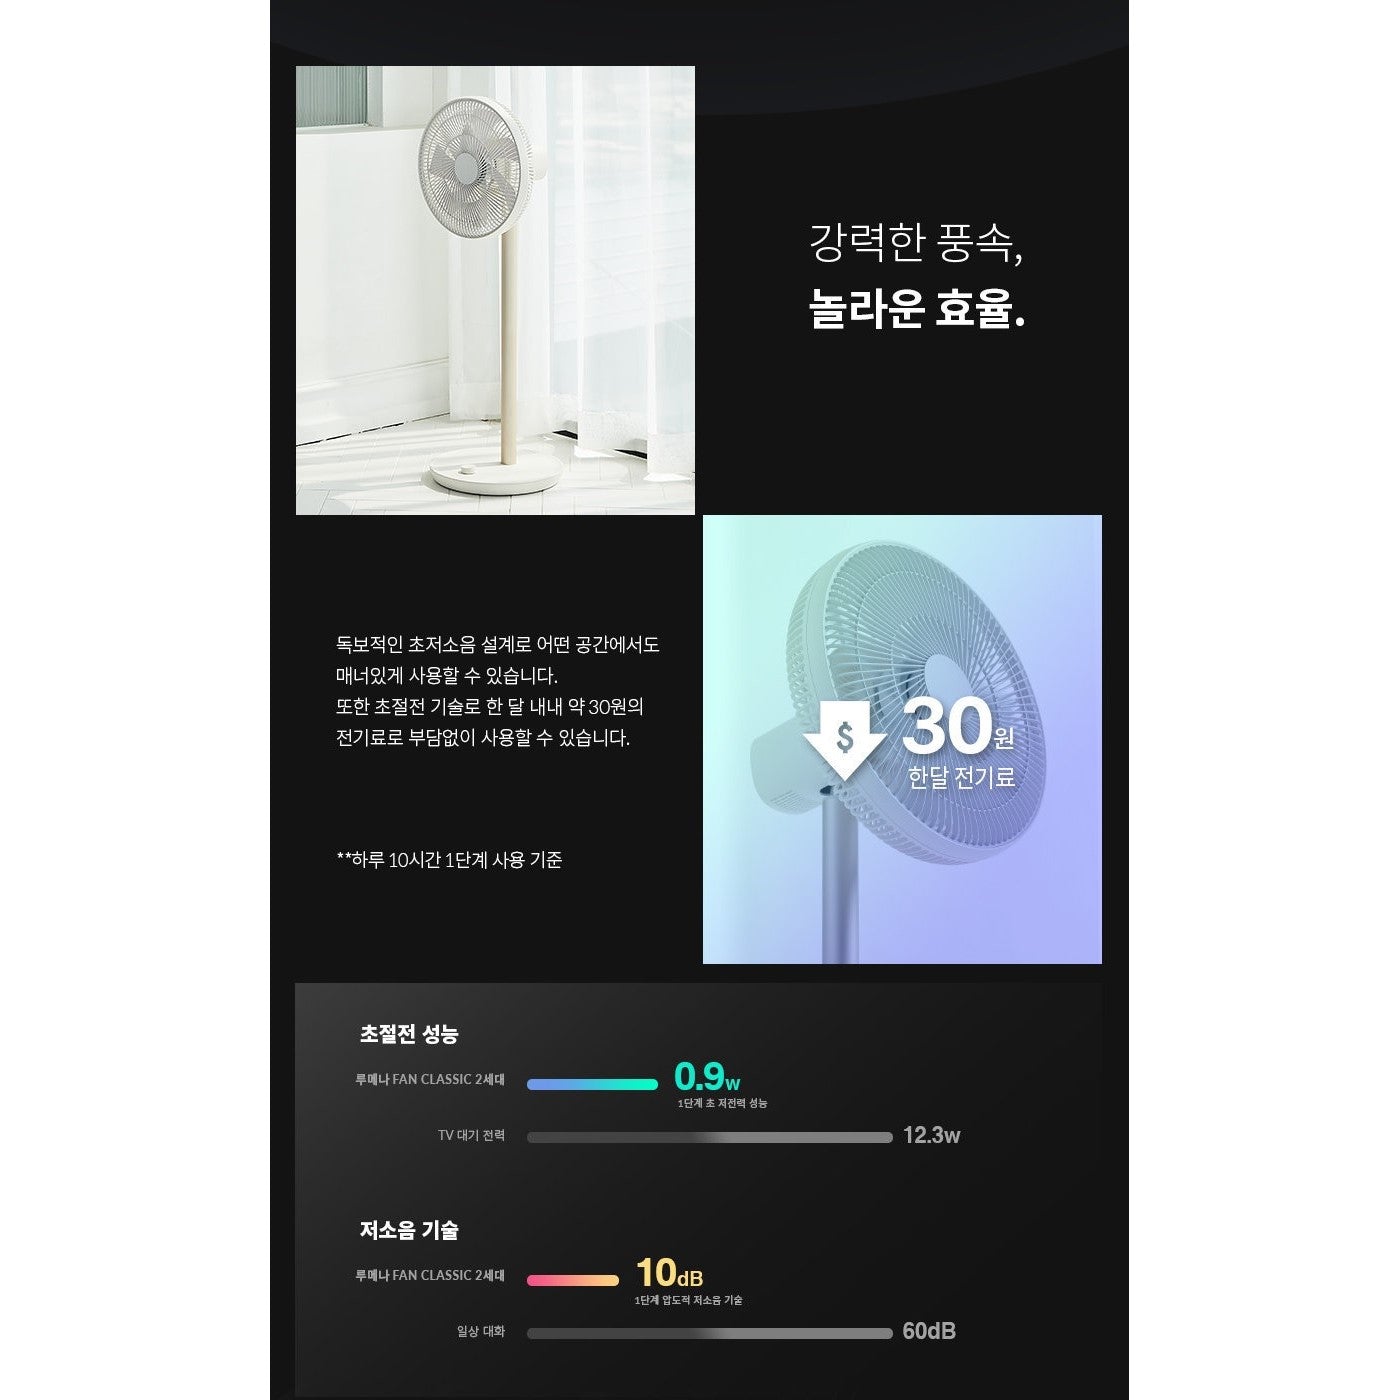 Korea LUMENA 2nd generation "Wireless" floor fan - 13 inches